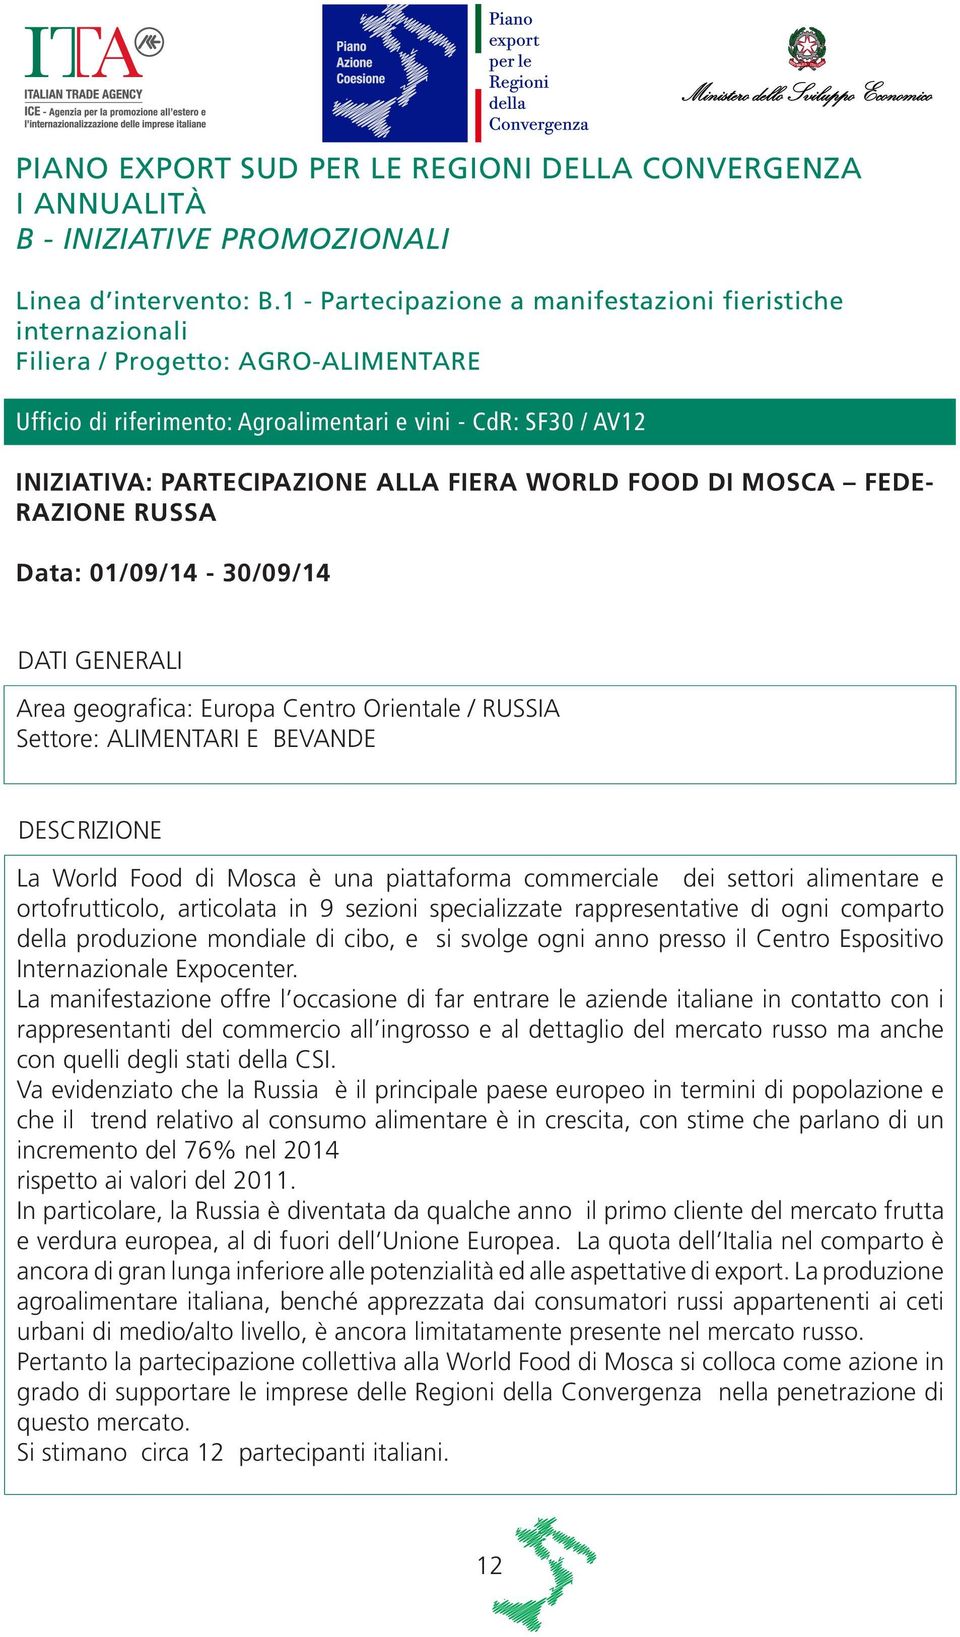 FIERA WORLD FOOD DI MOSCA FEDE- RAZIONE RUSSA Data: 01/09/14-30/09/14 Area geografica: Europa Centro Orientale / RUSSIA Settore: ALIMENTARI E BEVANDE La World Food di Mosca è una piattaforma